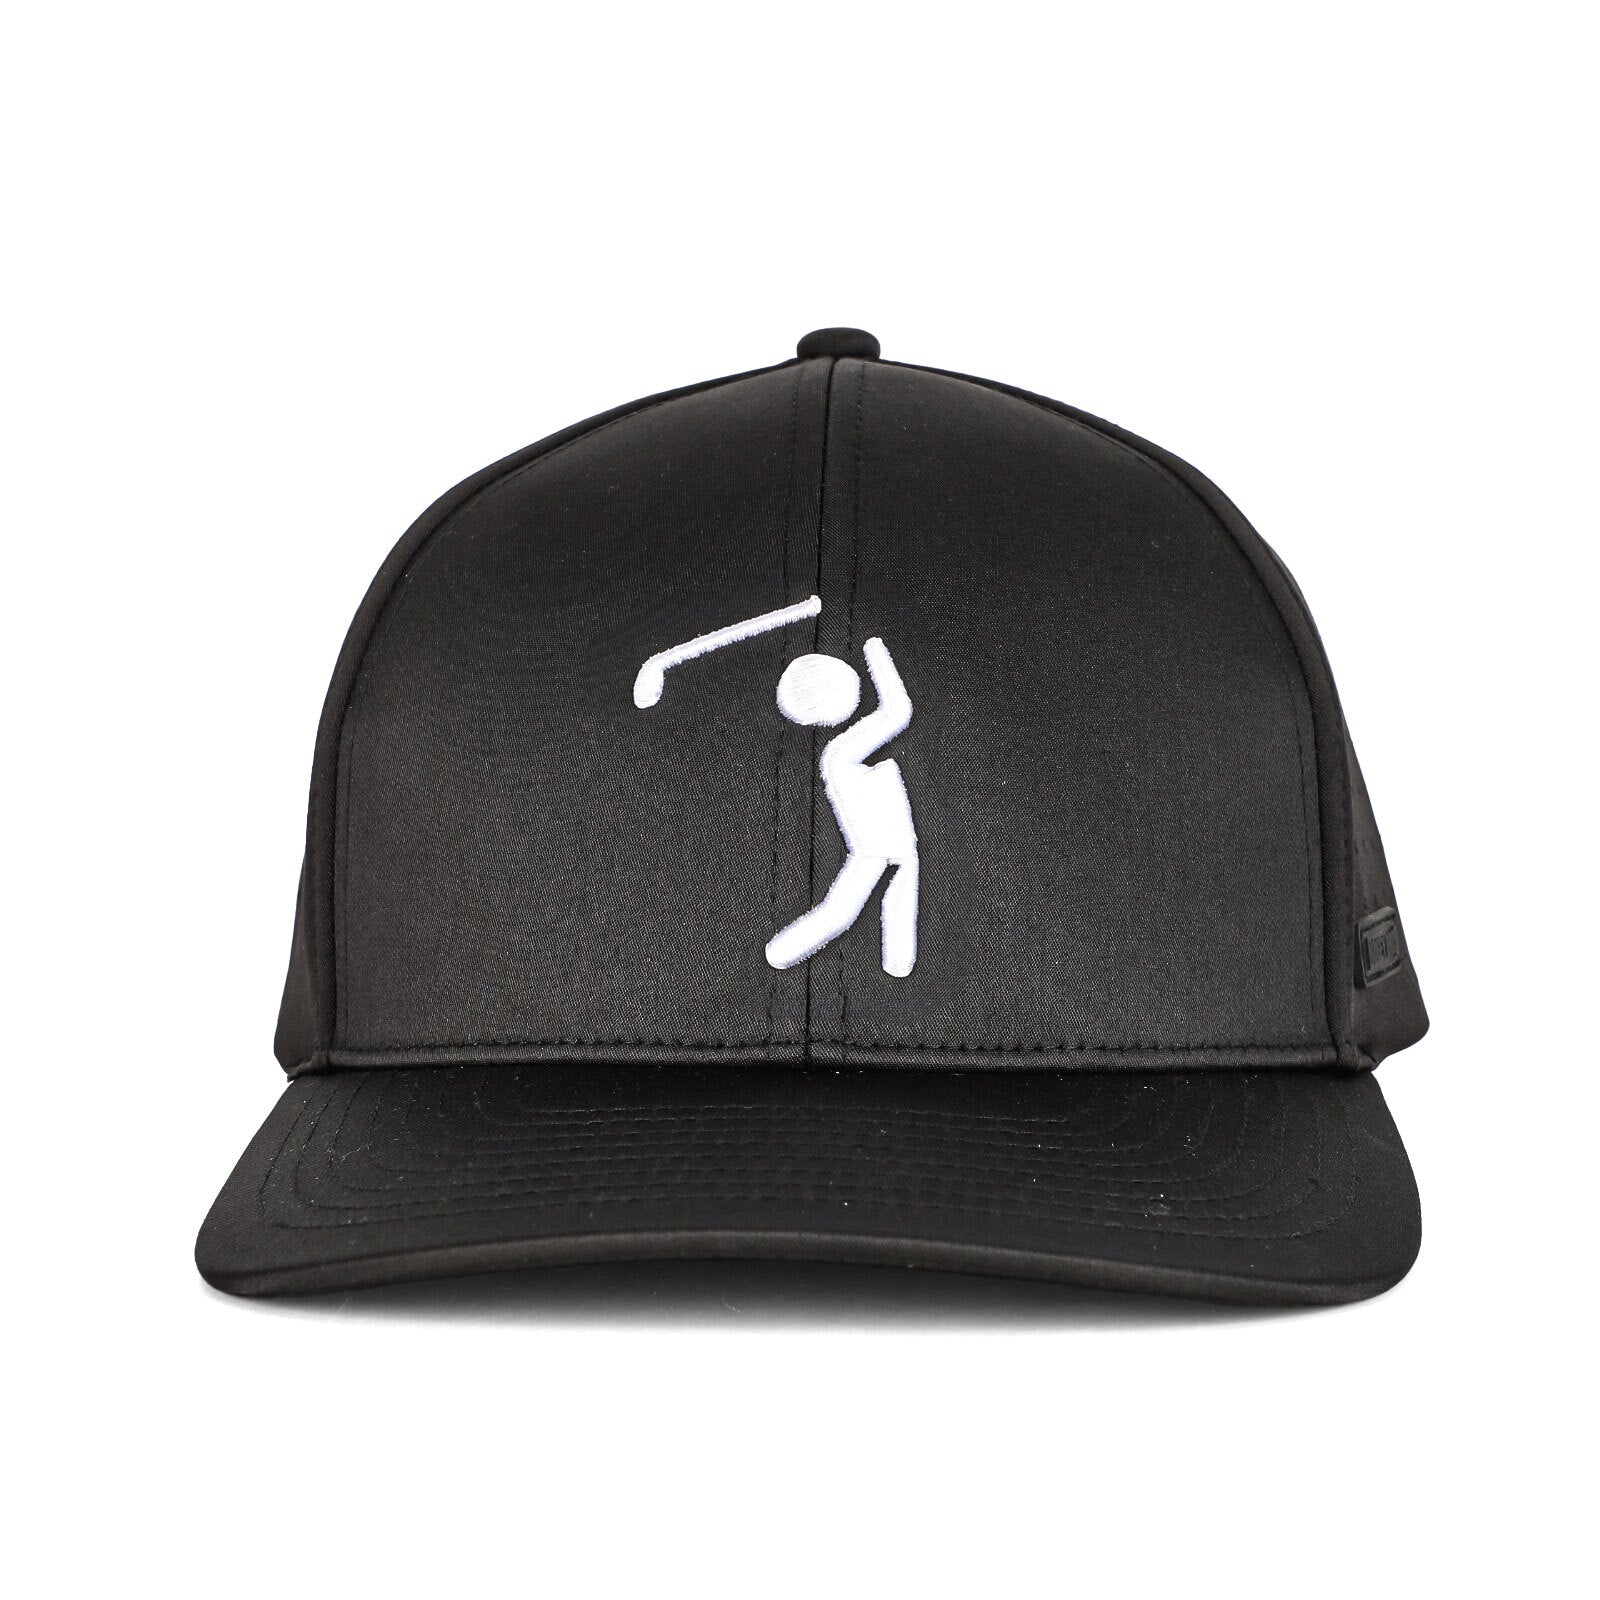 Bogeyman Black - Performance Golf Hat - Stretch Fit